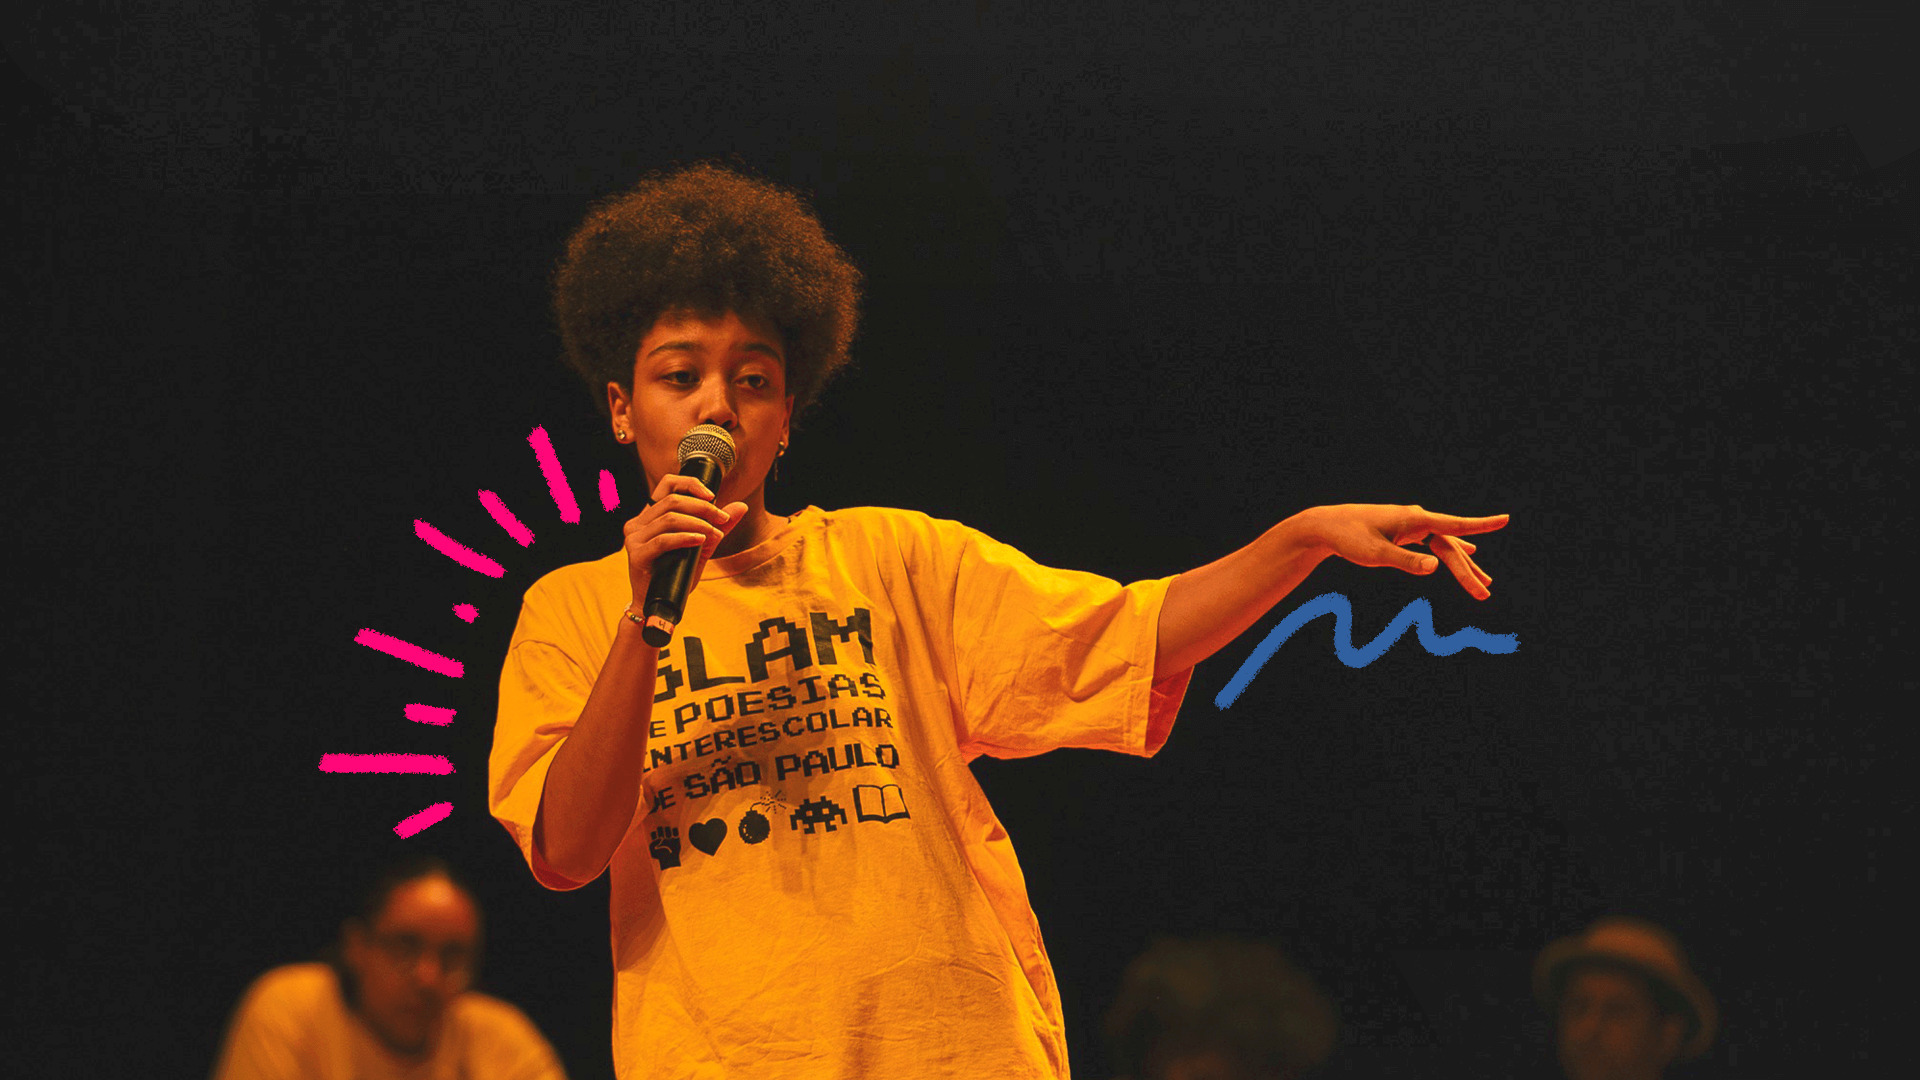 Uma jovem negra de camiseta amarela com a palavra slam estampada está segurando um microfone